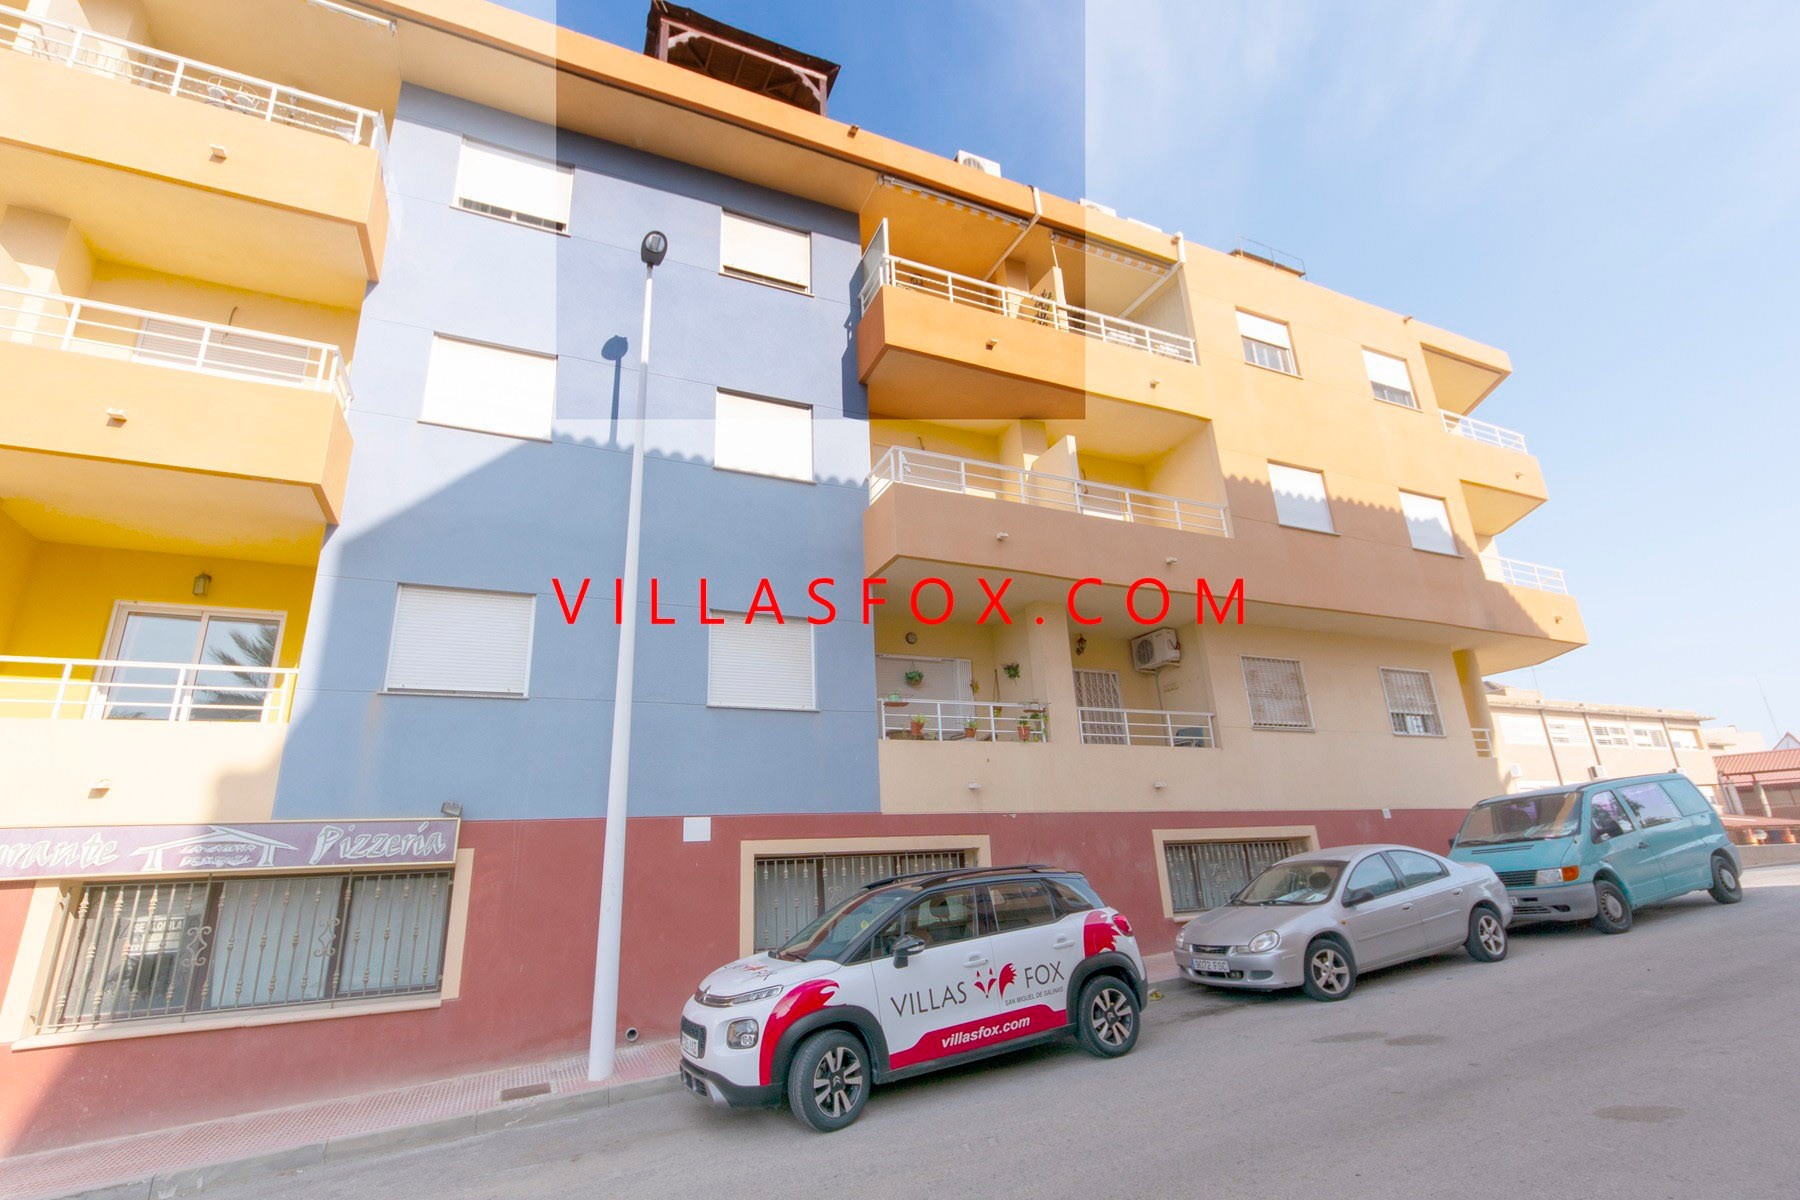 1 San Miguel de Salinas Lägenhet i centrum av Villas Fox bästa fastighetsmäklare 611039449965e